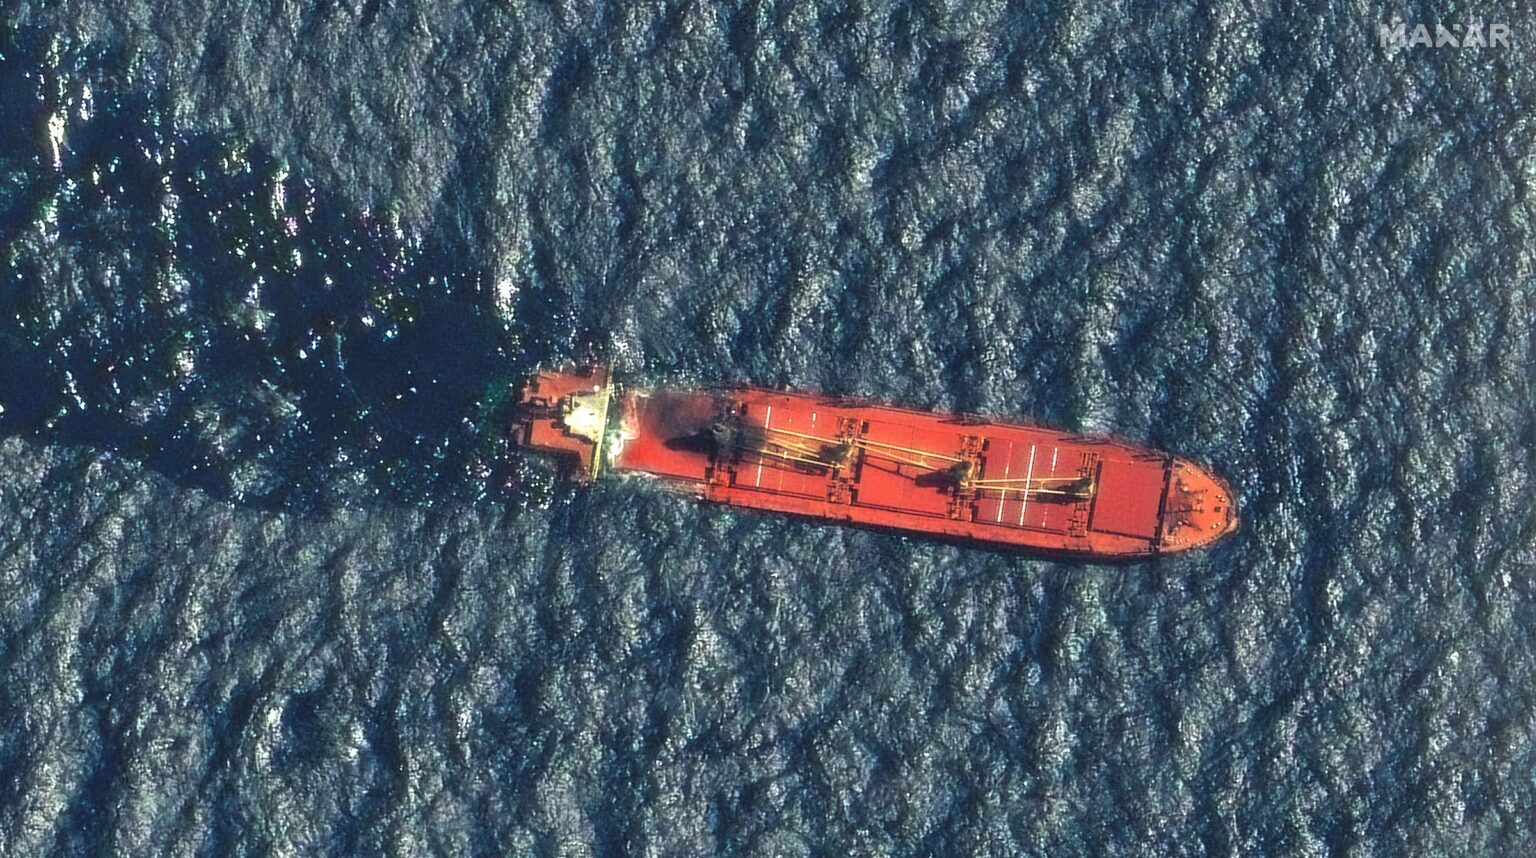 الجيش الأمريكي يؤكد غرق السفينة روبيمار بعد تعرضها لهجوم حوثي